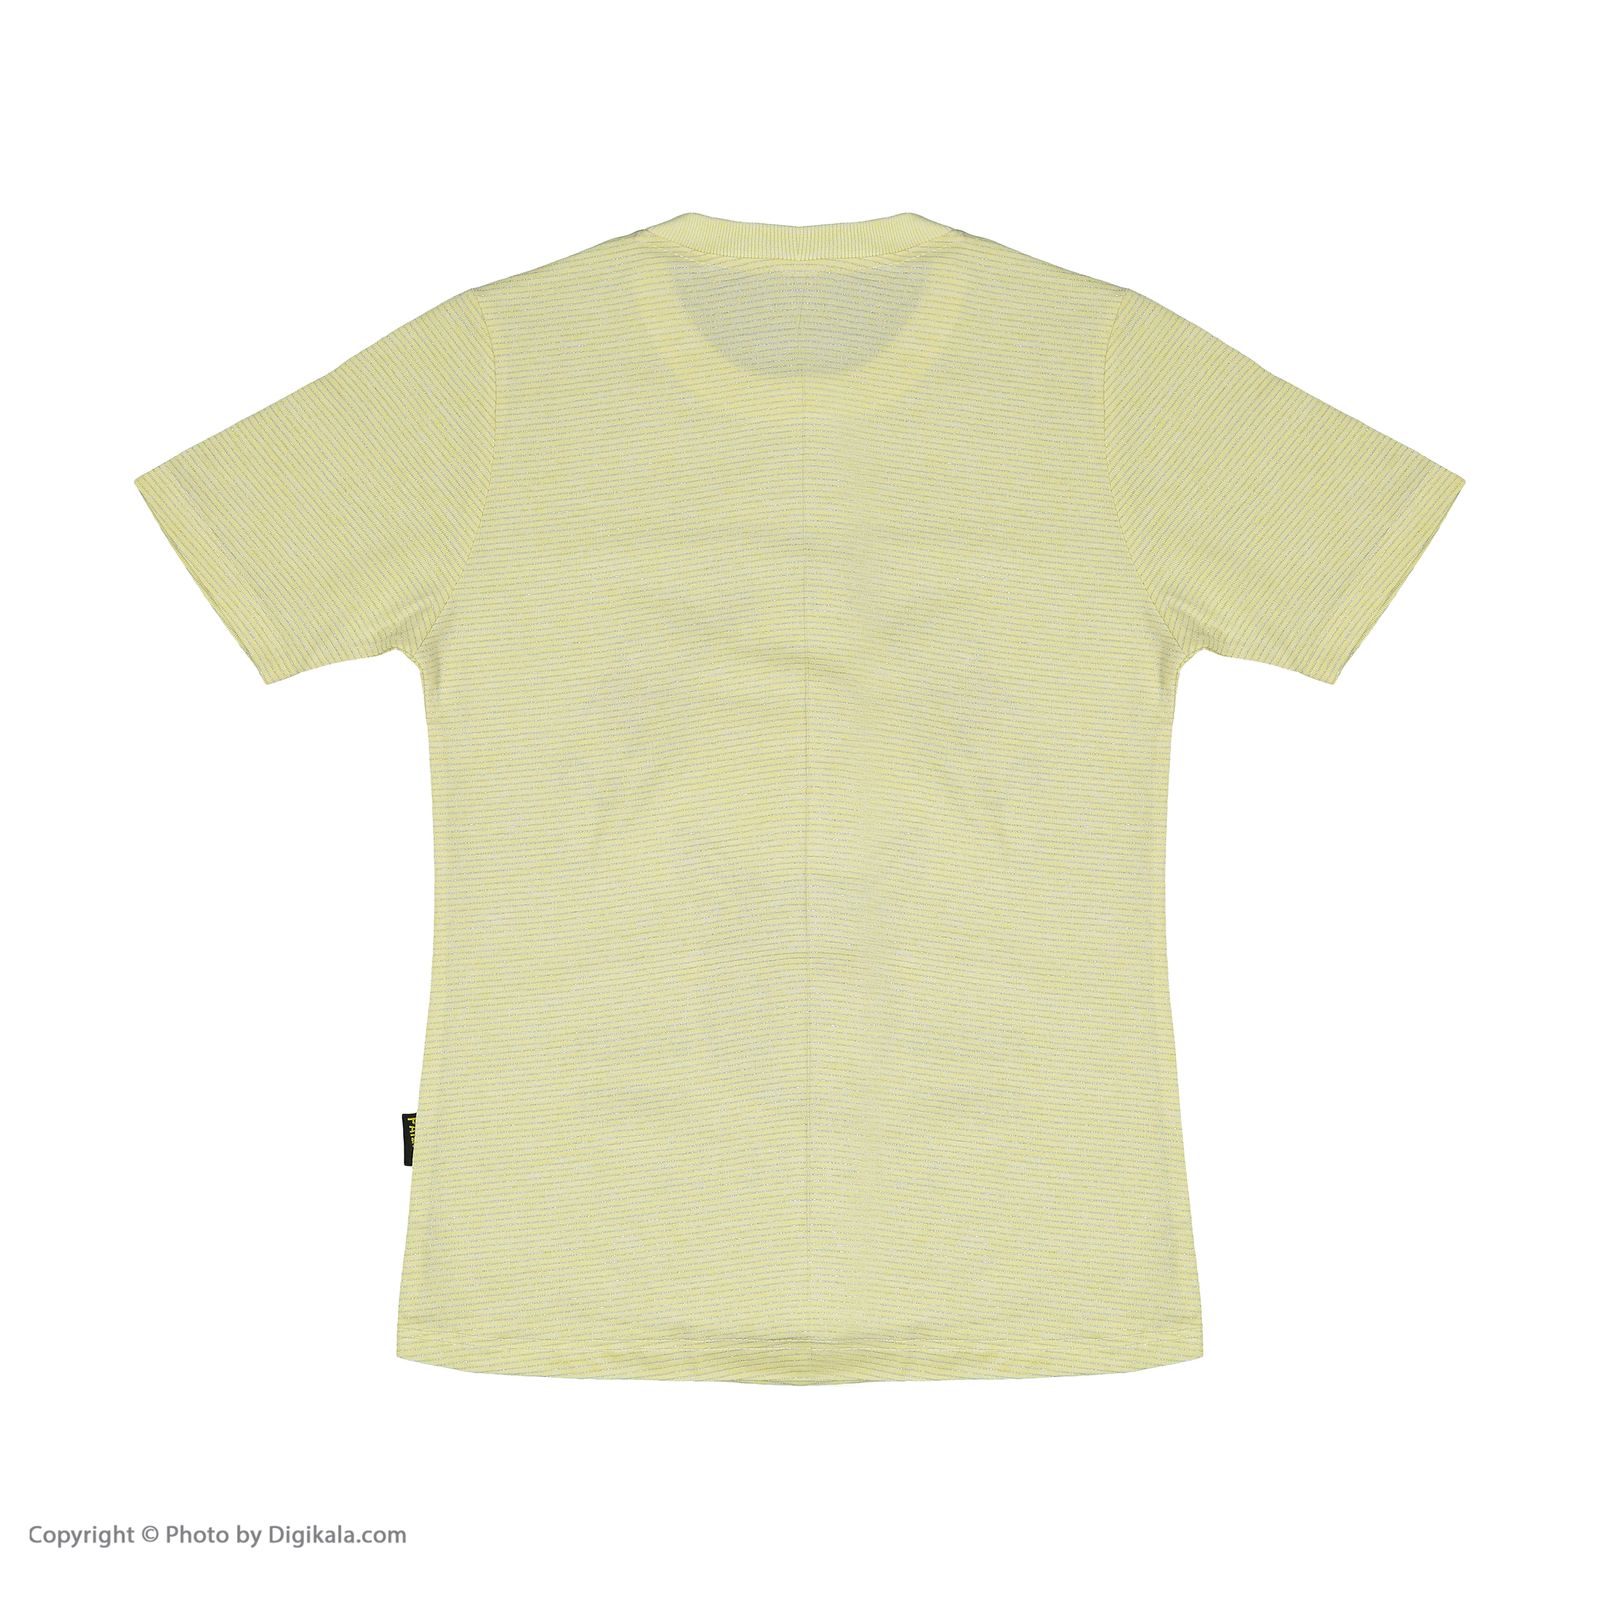 ست تی شرت و شلوارک دخترانه بانالی مدل کتی کد 3563 -  - 6